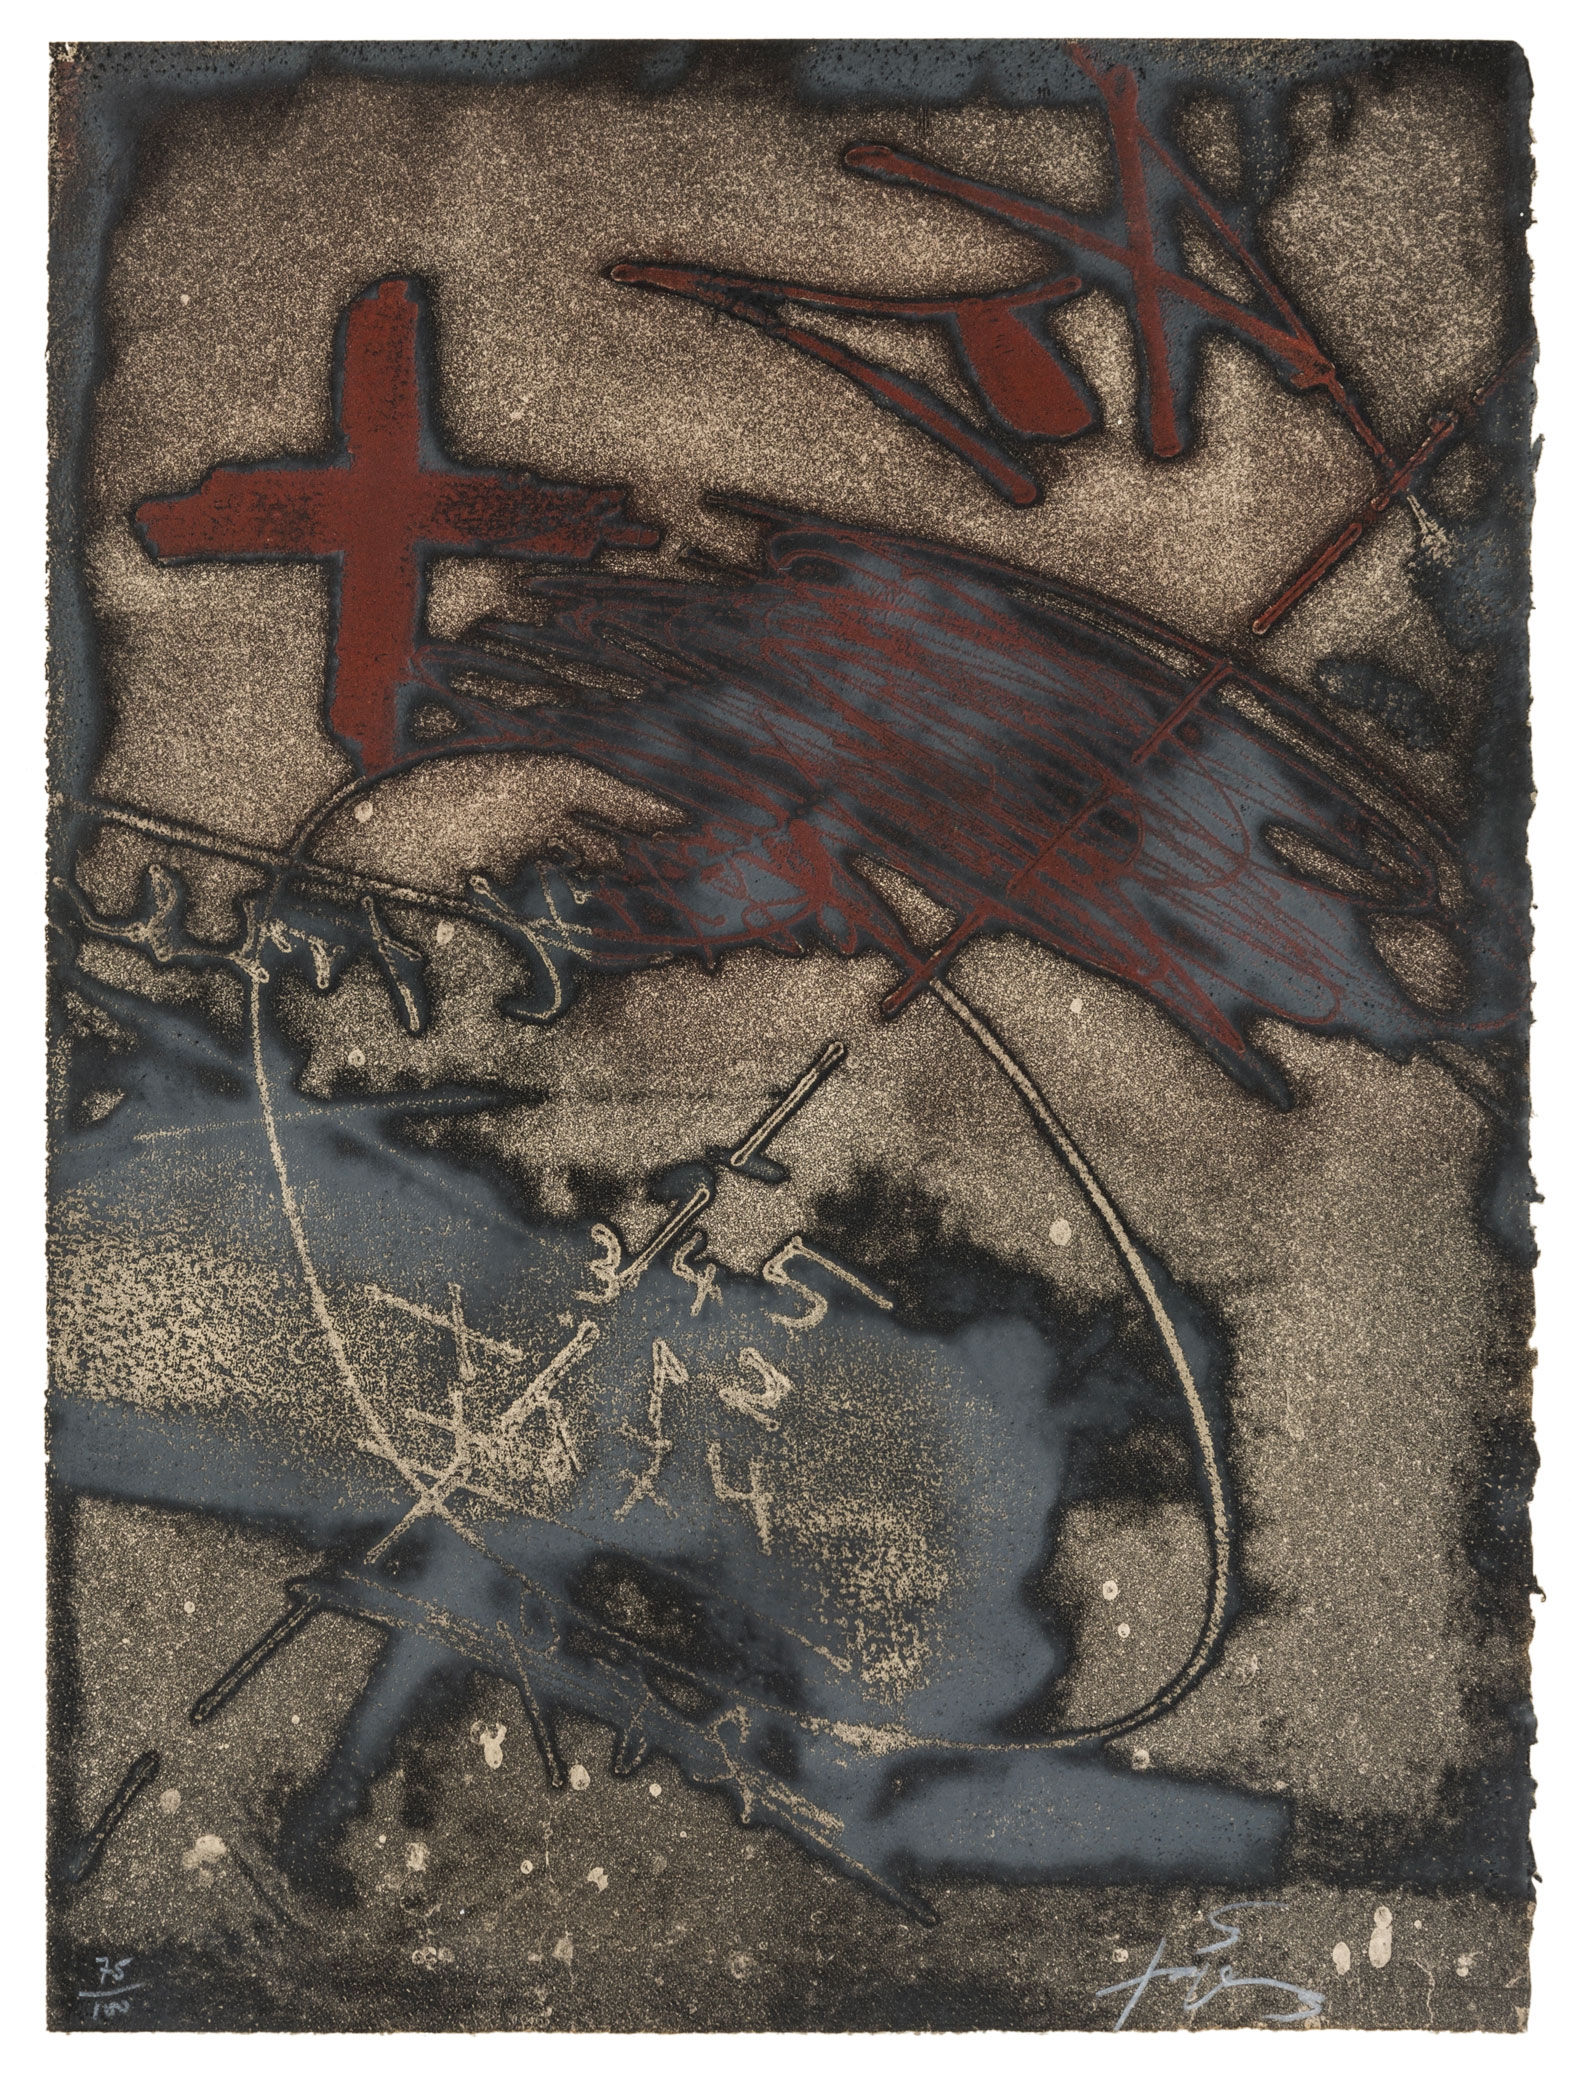 Paroles peintes V by Antoni Tàpies, 1975